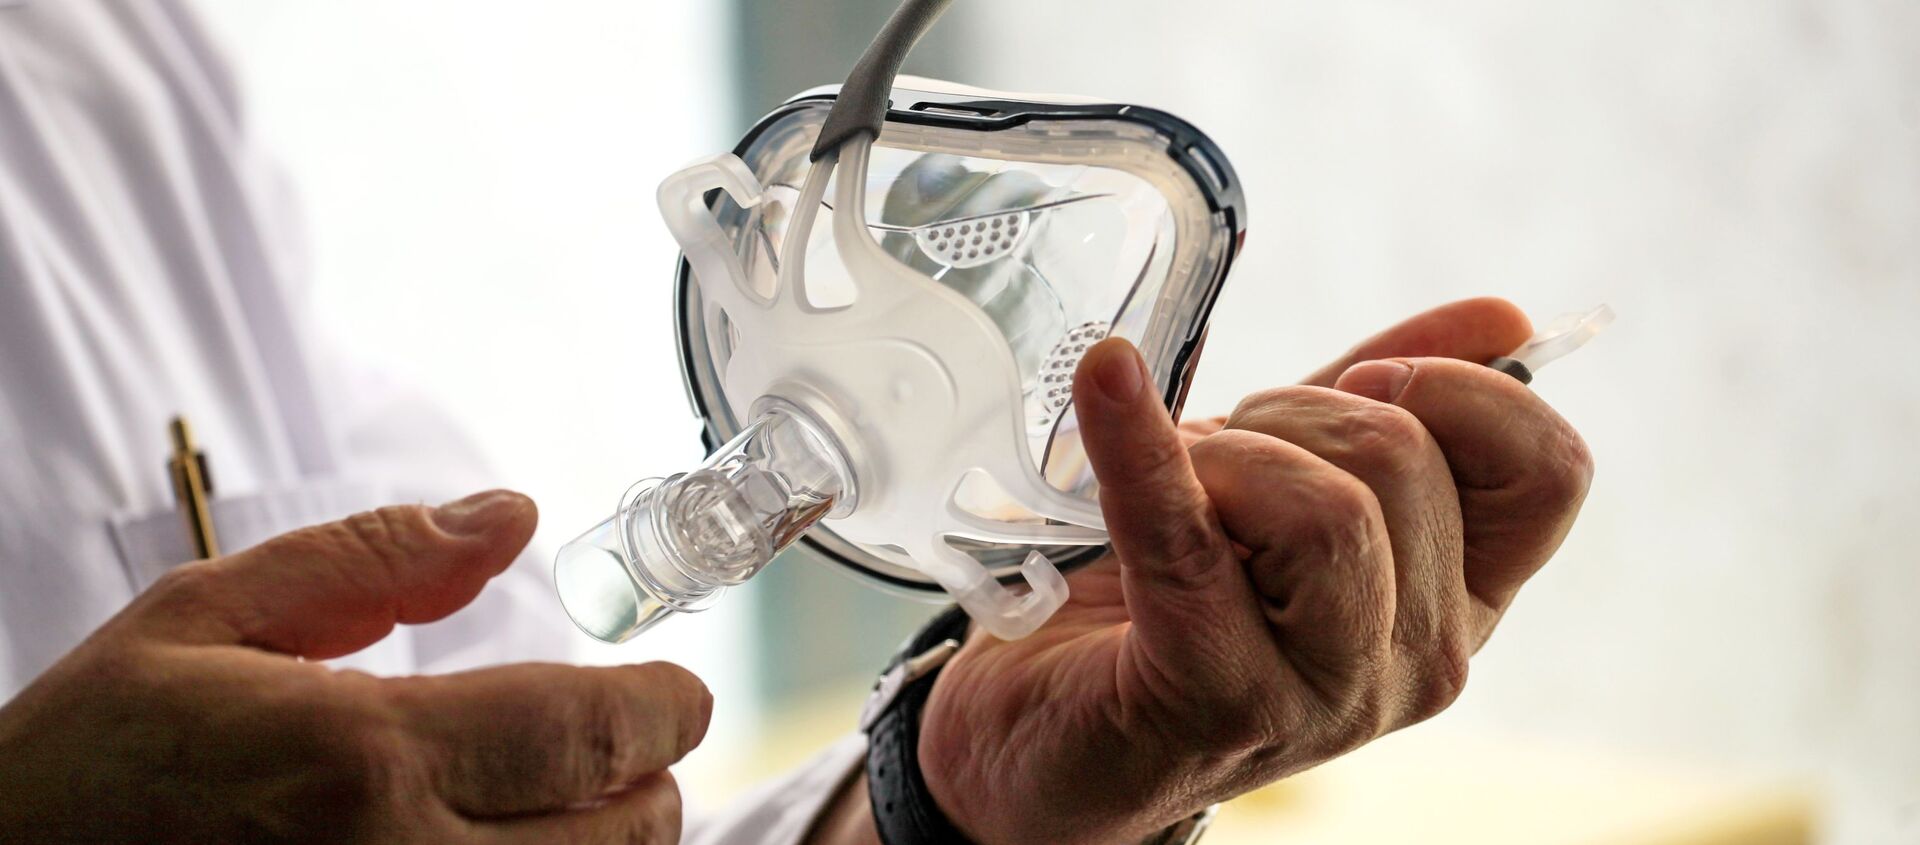 Врач держит в руках маску для искусственной вентиляции легких в палате госпиталя ветеранов войн в Иркутске - Sputnik Армения, 1920, 23.03.2021